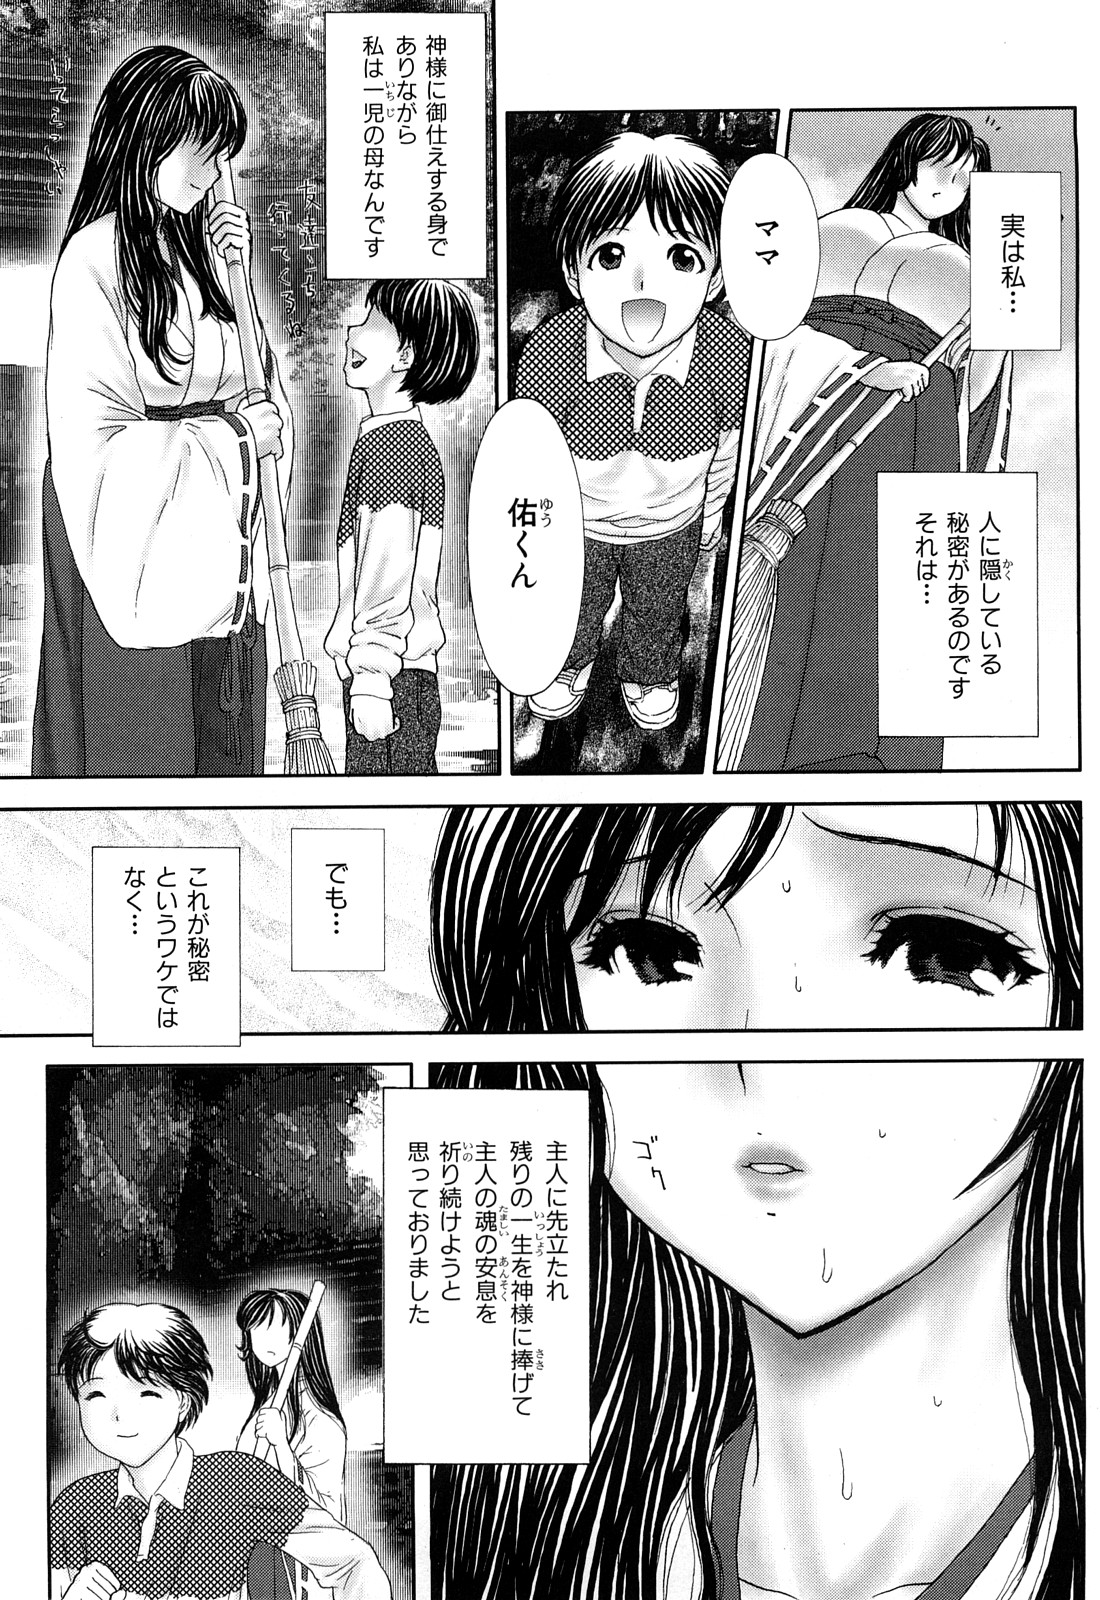 [EXTREME] Tsuma No Shizuku ~Nikuyome Miyuki 29 sai~ page 49 full